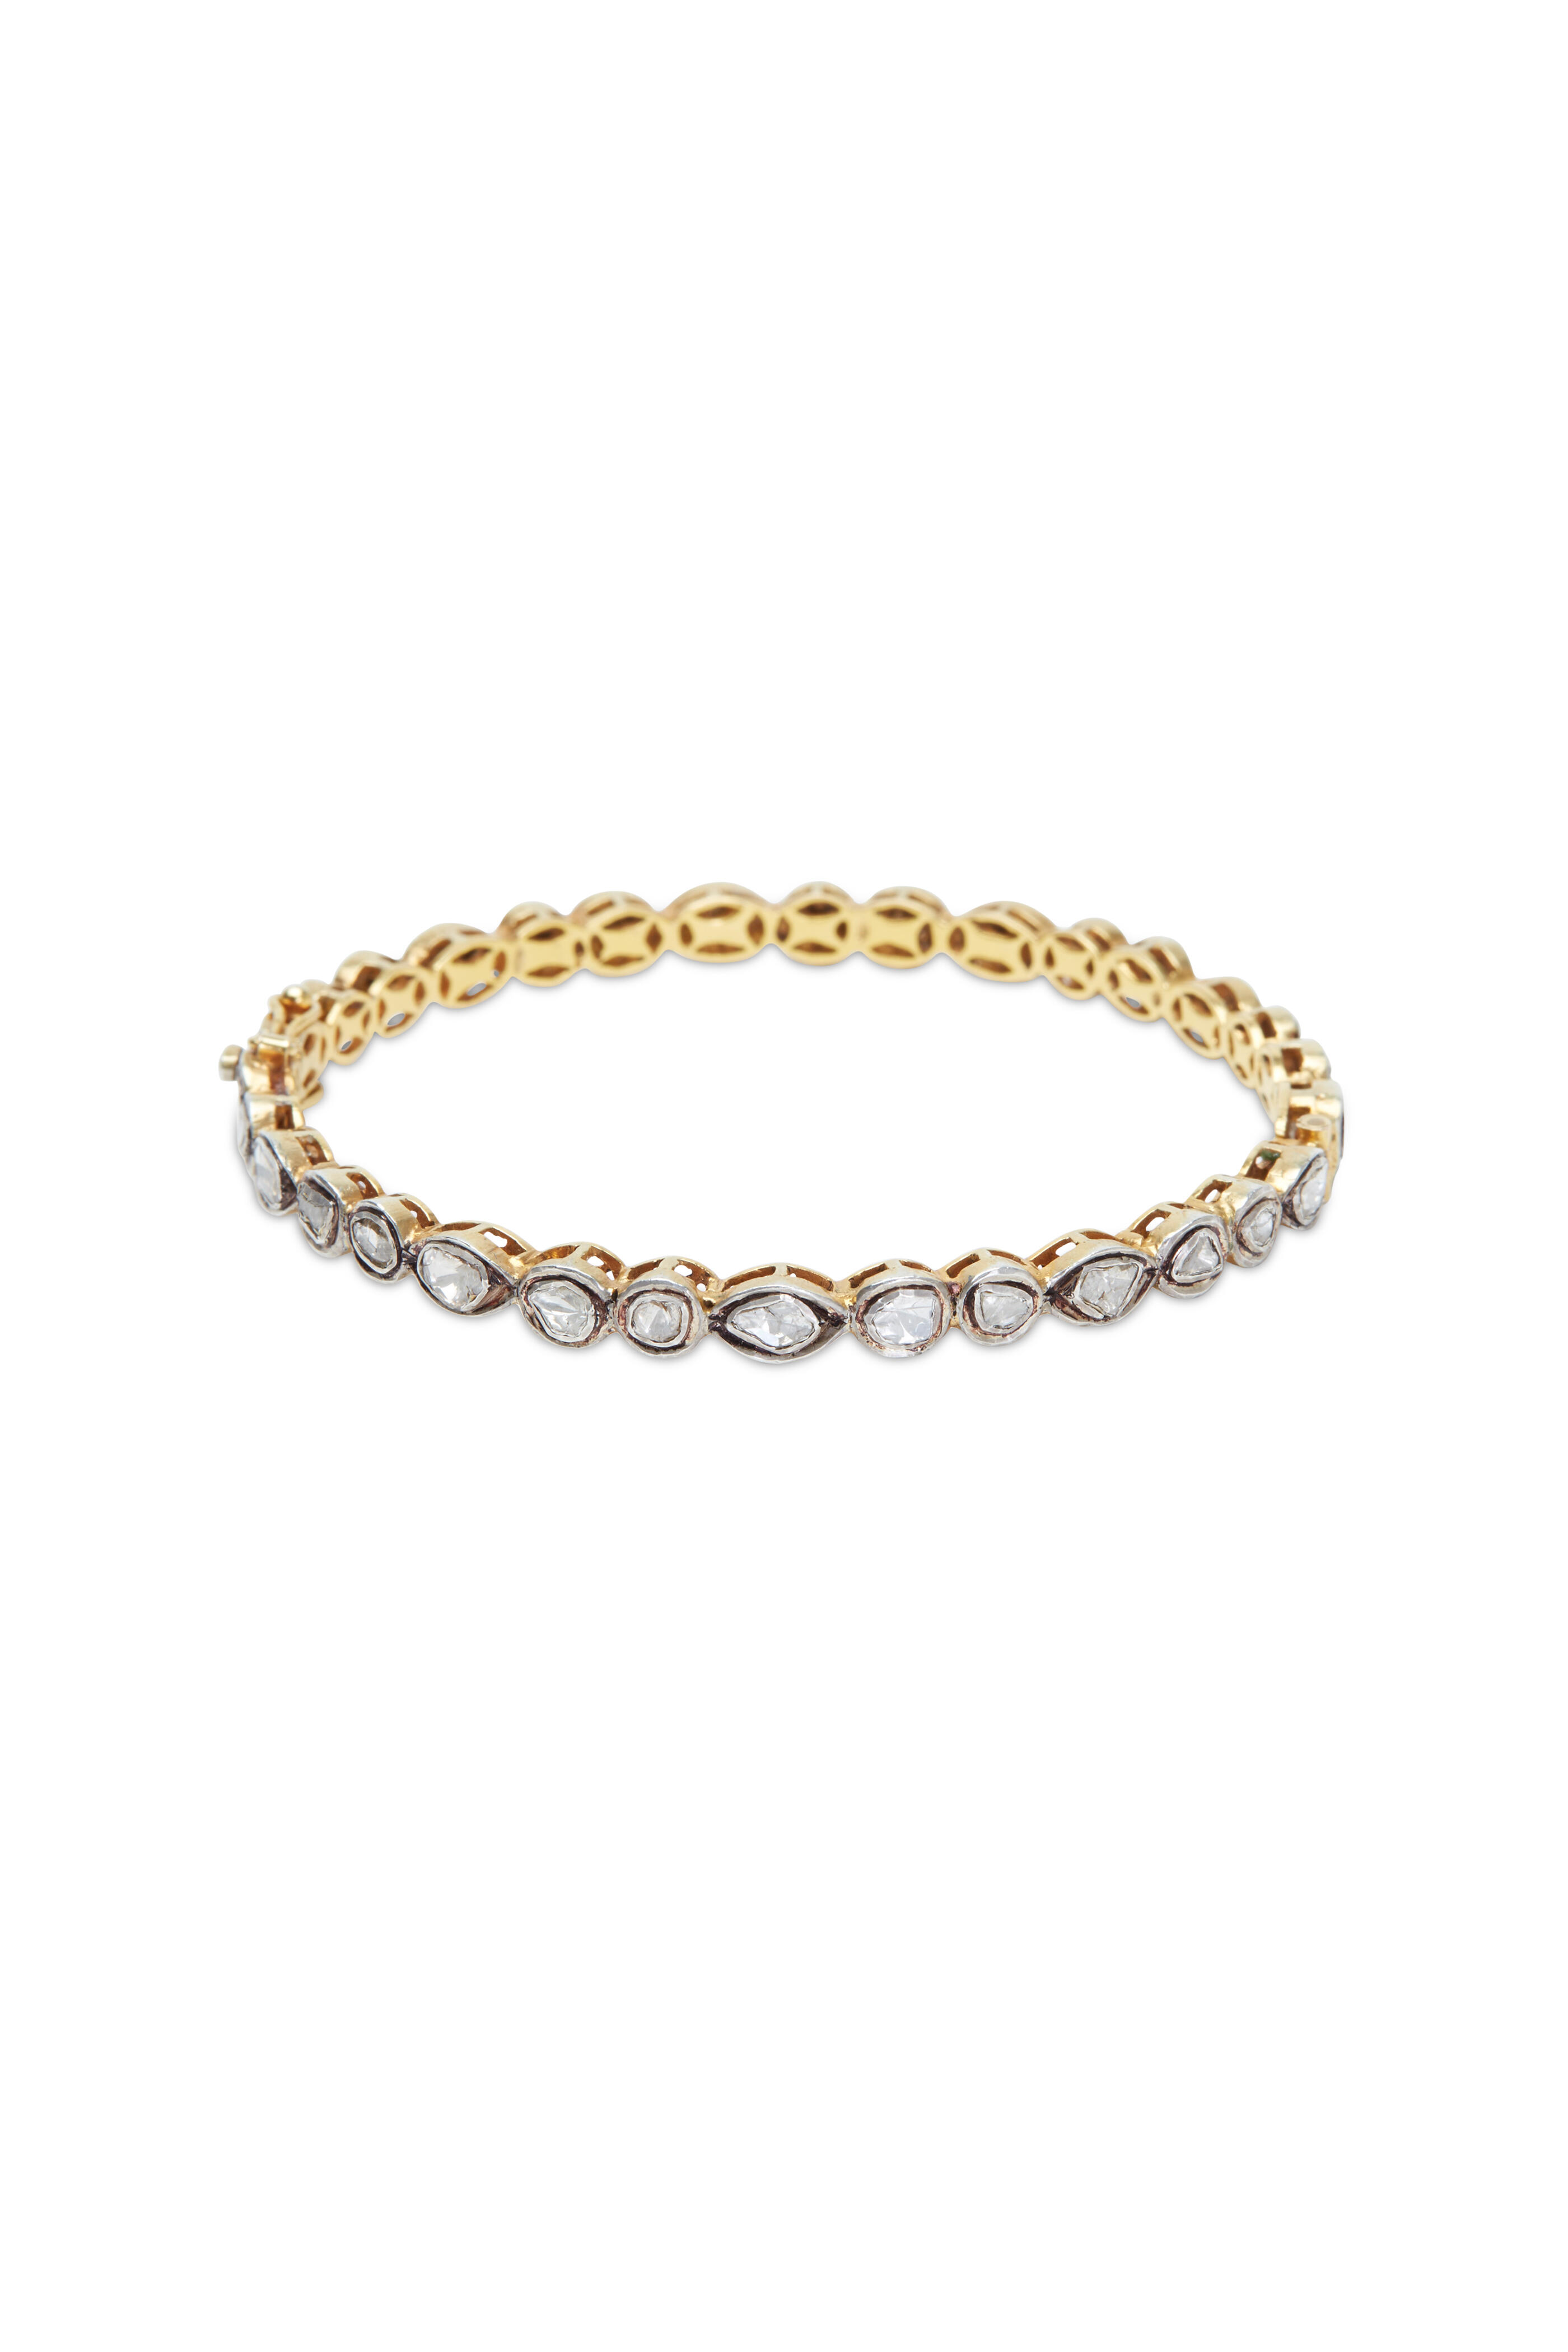 Loren Jewels - Sterling Silver White Diamond Bracelet